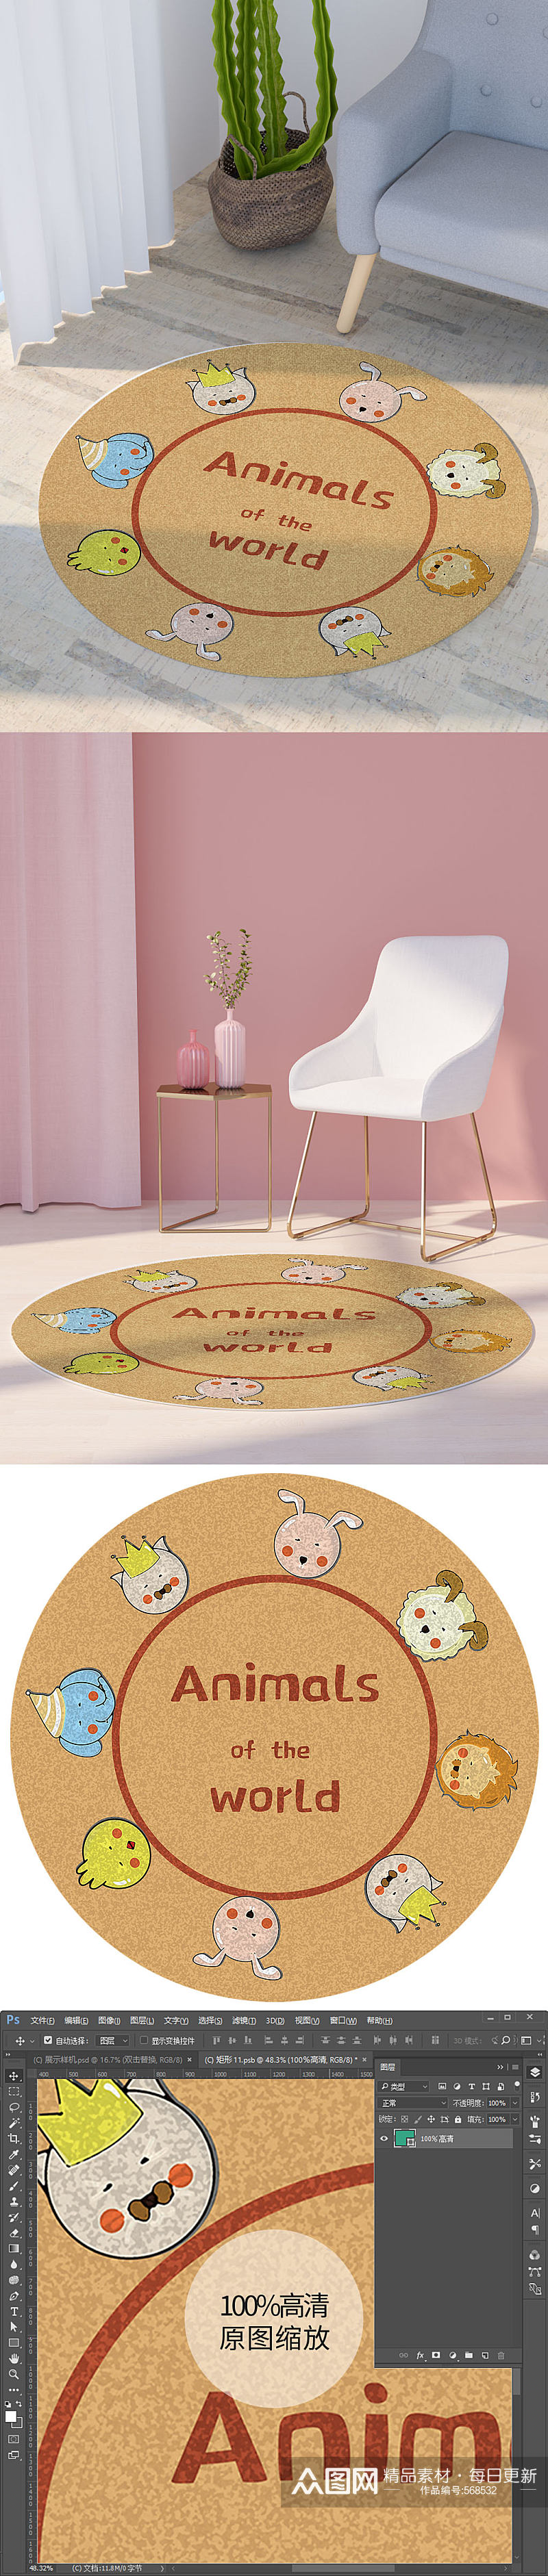 可爱小动物印花圆形地毯高清图案素材素材